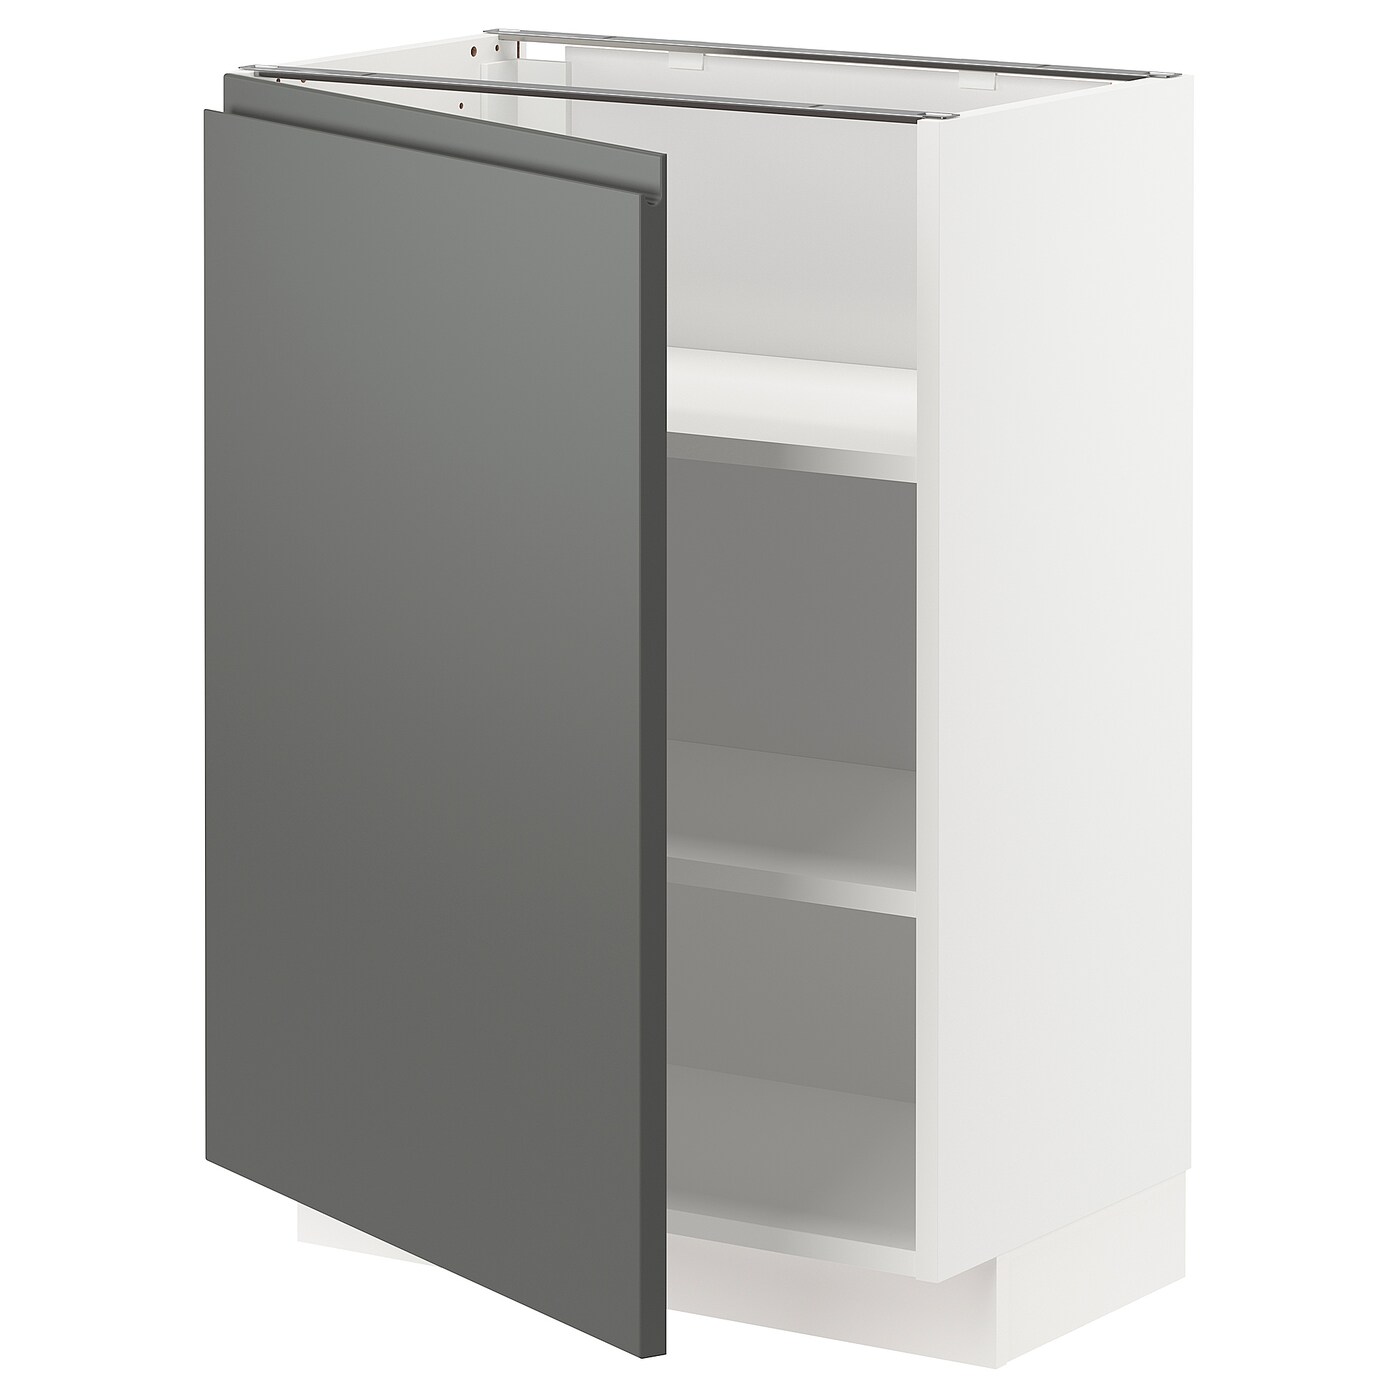 Напольный кухонный шкаф  - IKEA METOD MAXIMERA, 88x39,5x60см, белый/темно-серый, МЕТОД МАКСИМЕРА ИКЕА